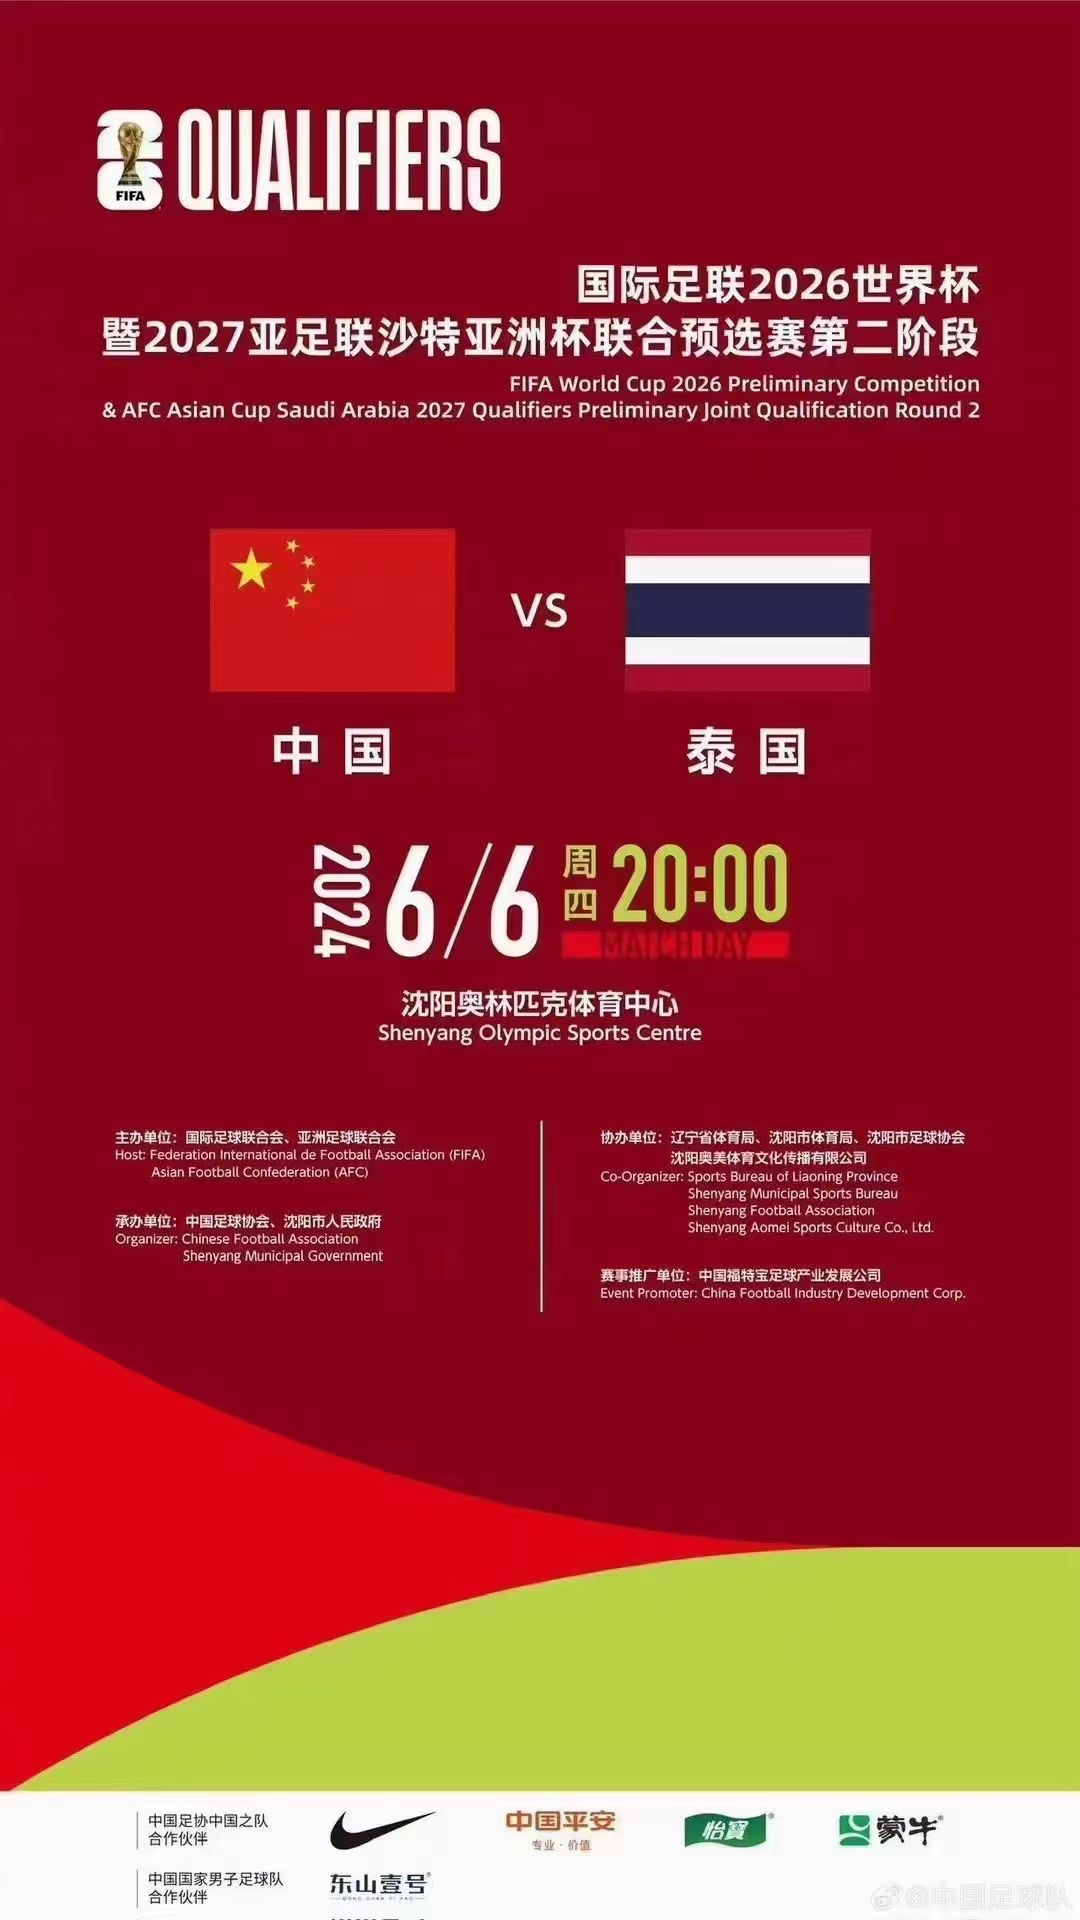 [天津]2026世界杯足球赛亚洲区预选赛 男足世预赛中国队比赛 中国vs泰国